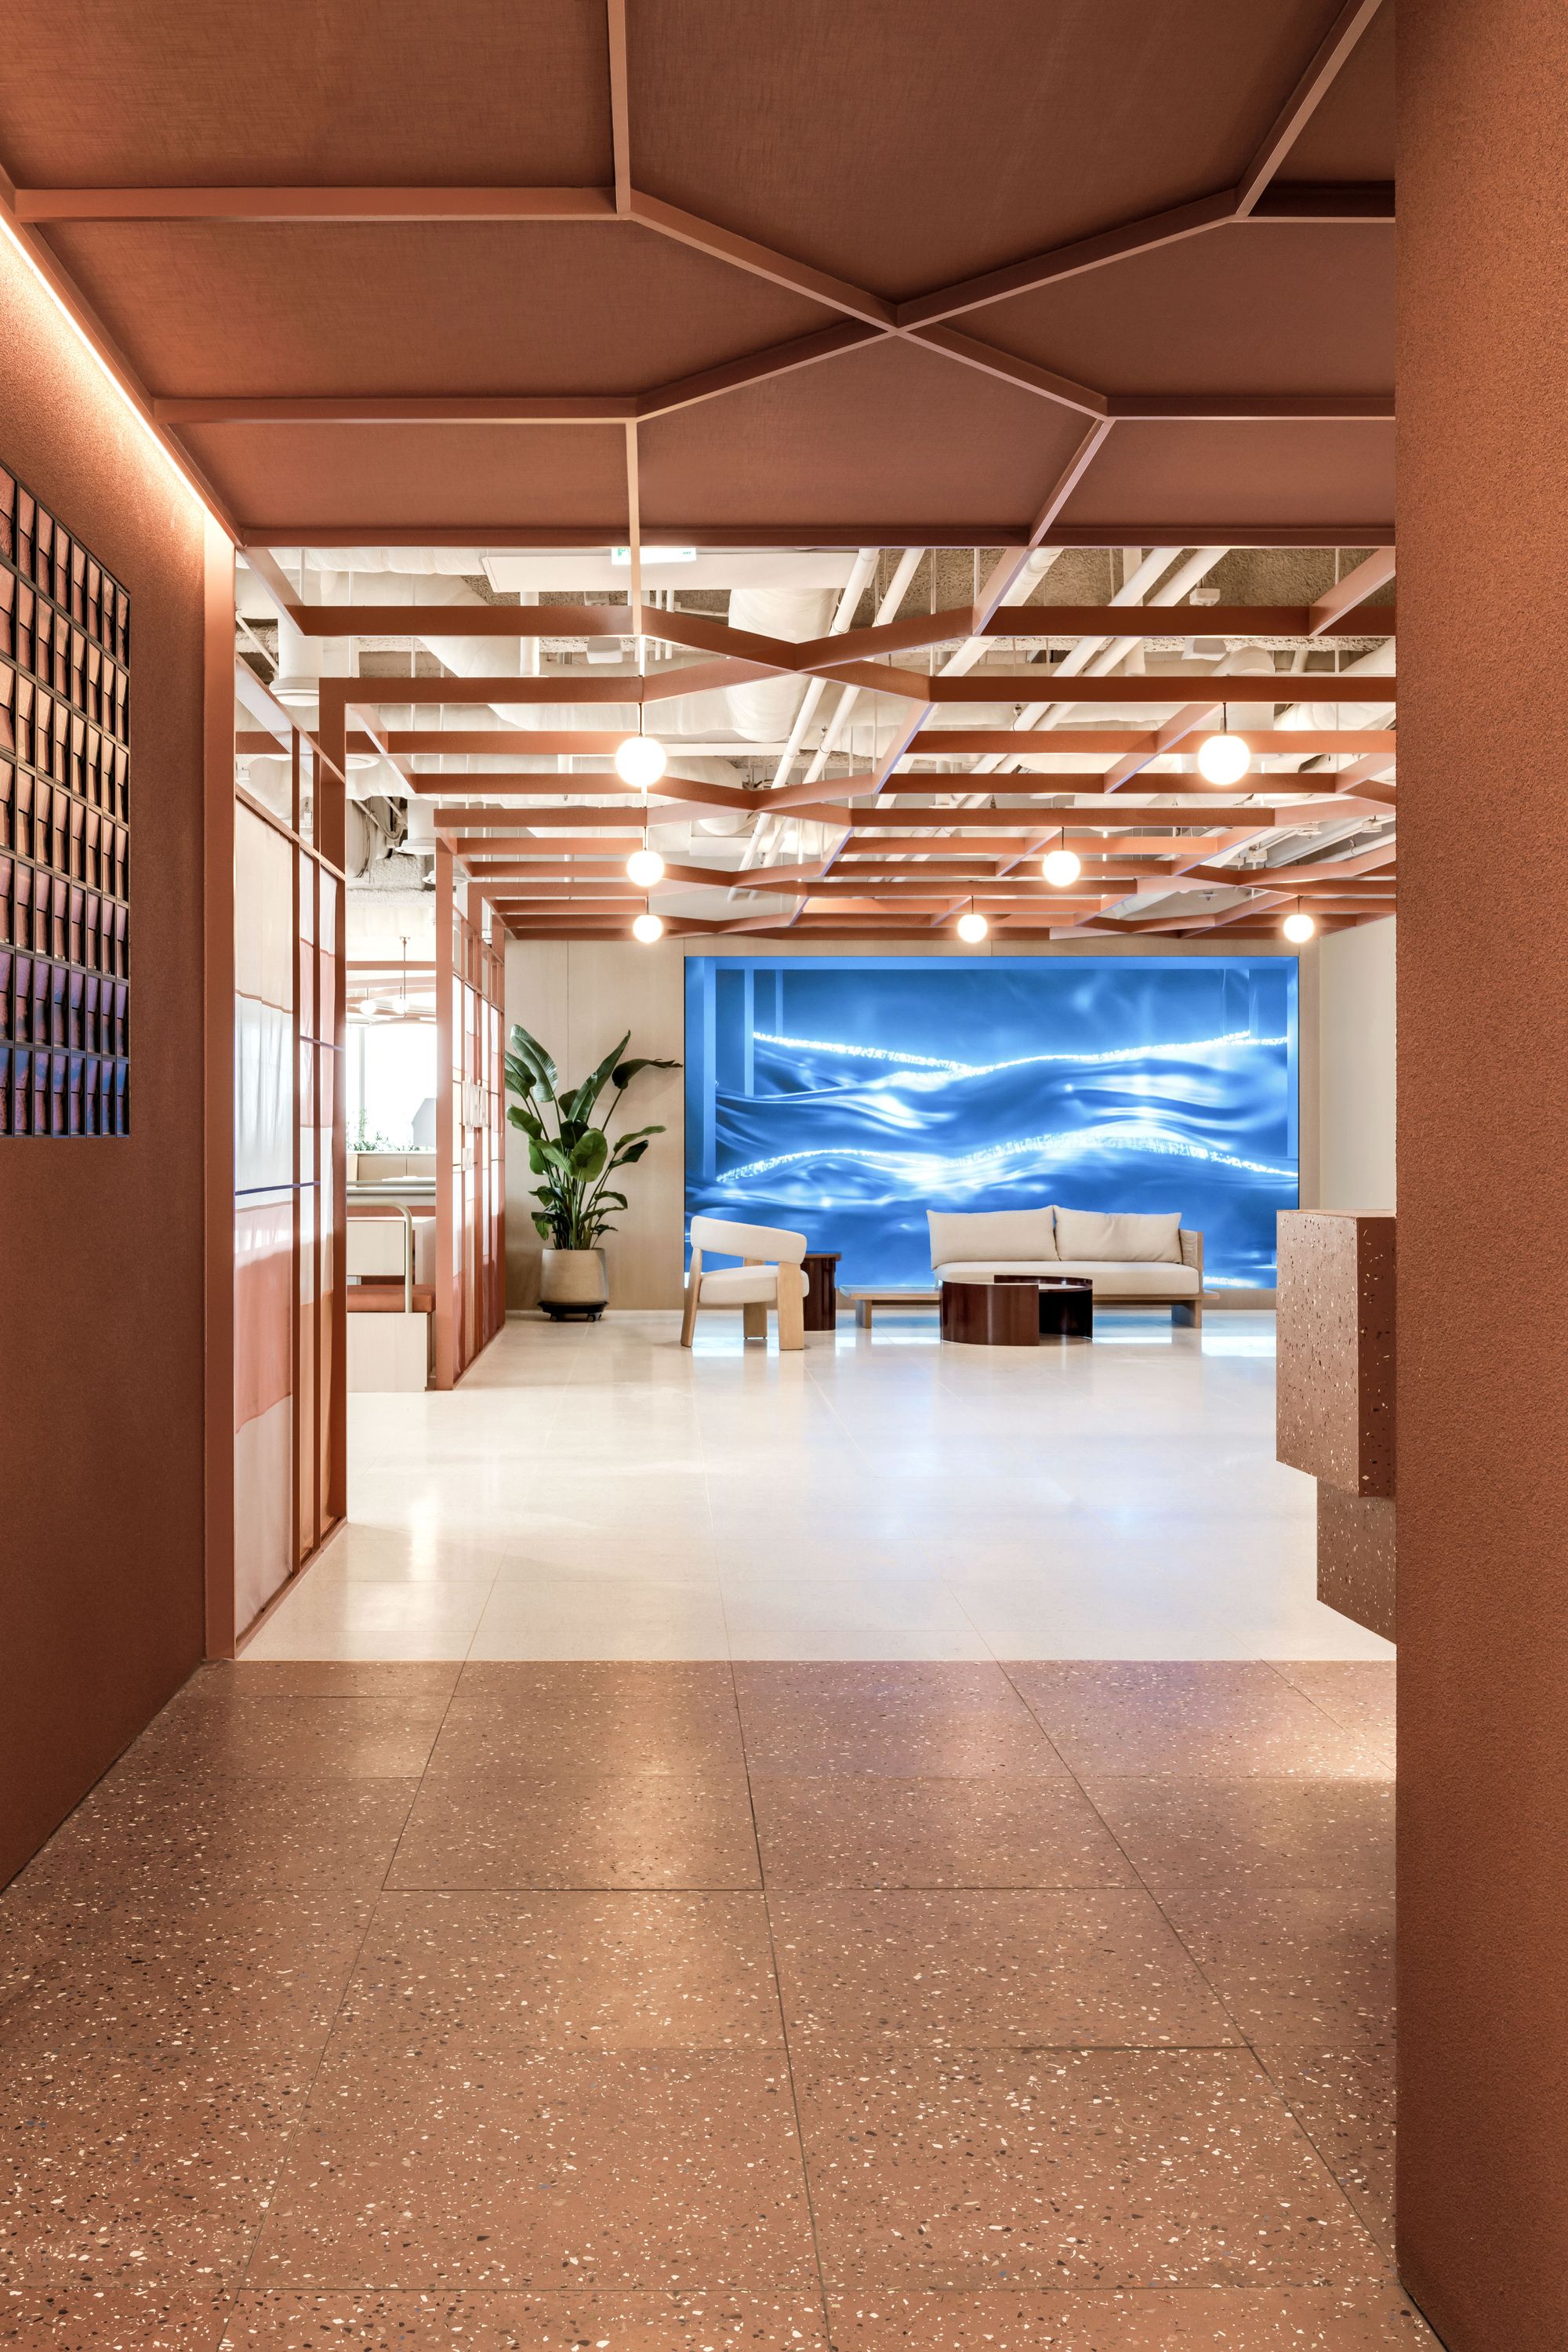 欧莱雅韩国办事处——首尔|ART-Arrakis | 建筑室内设计的创新与灵感